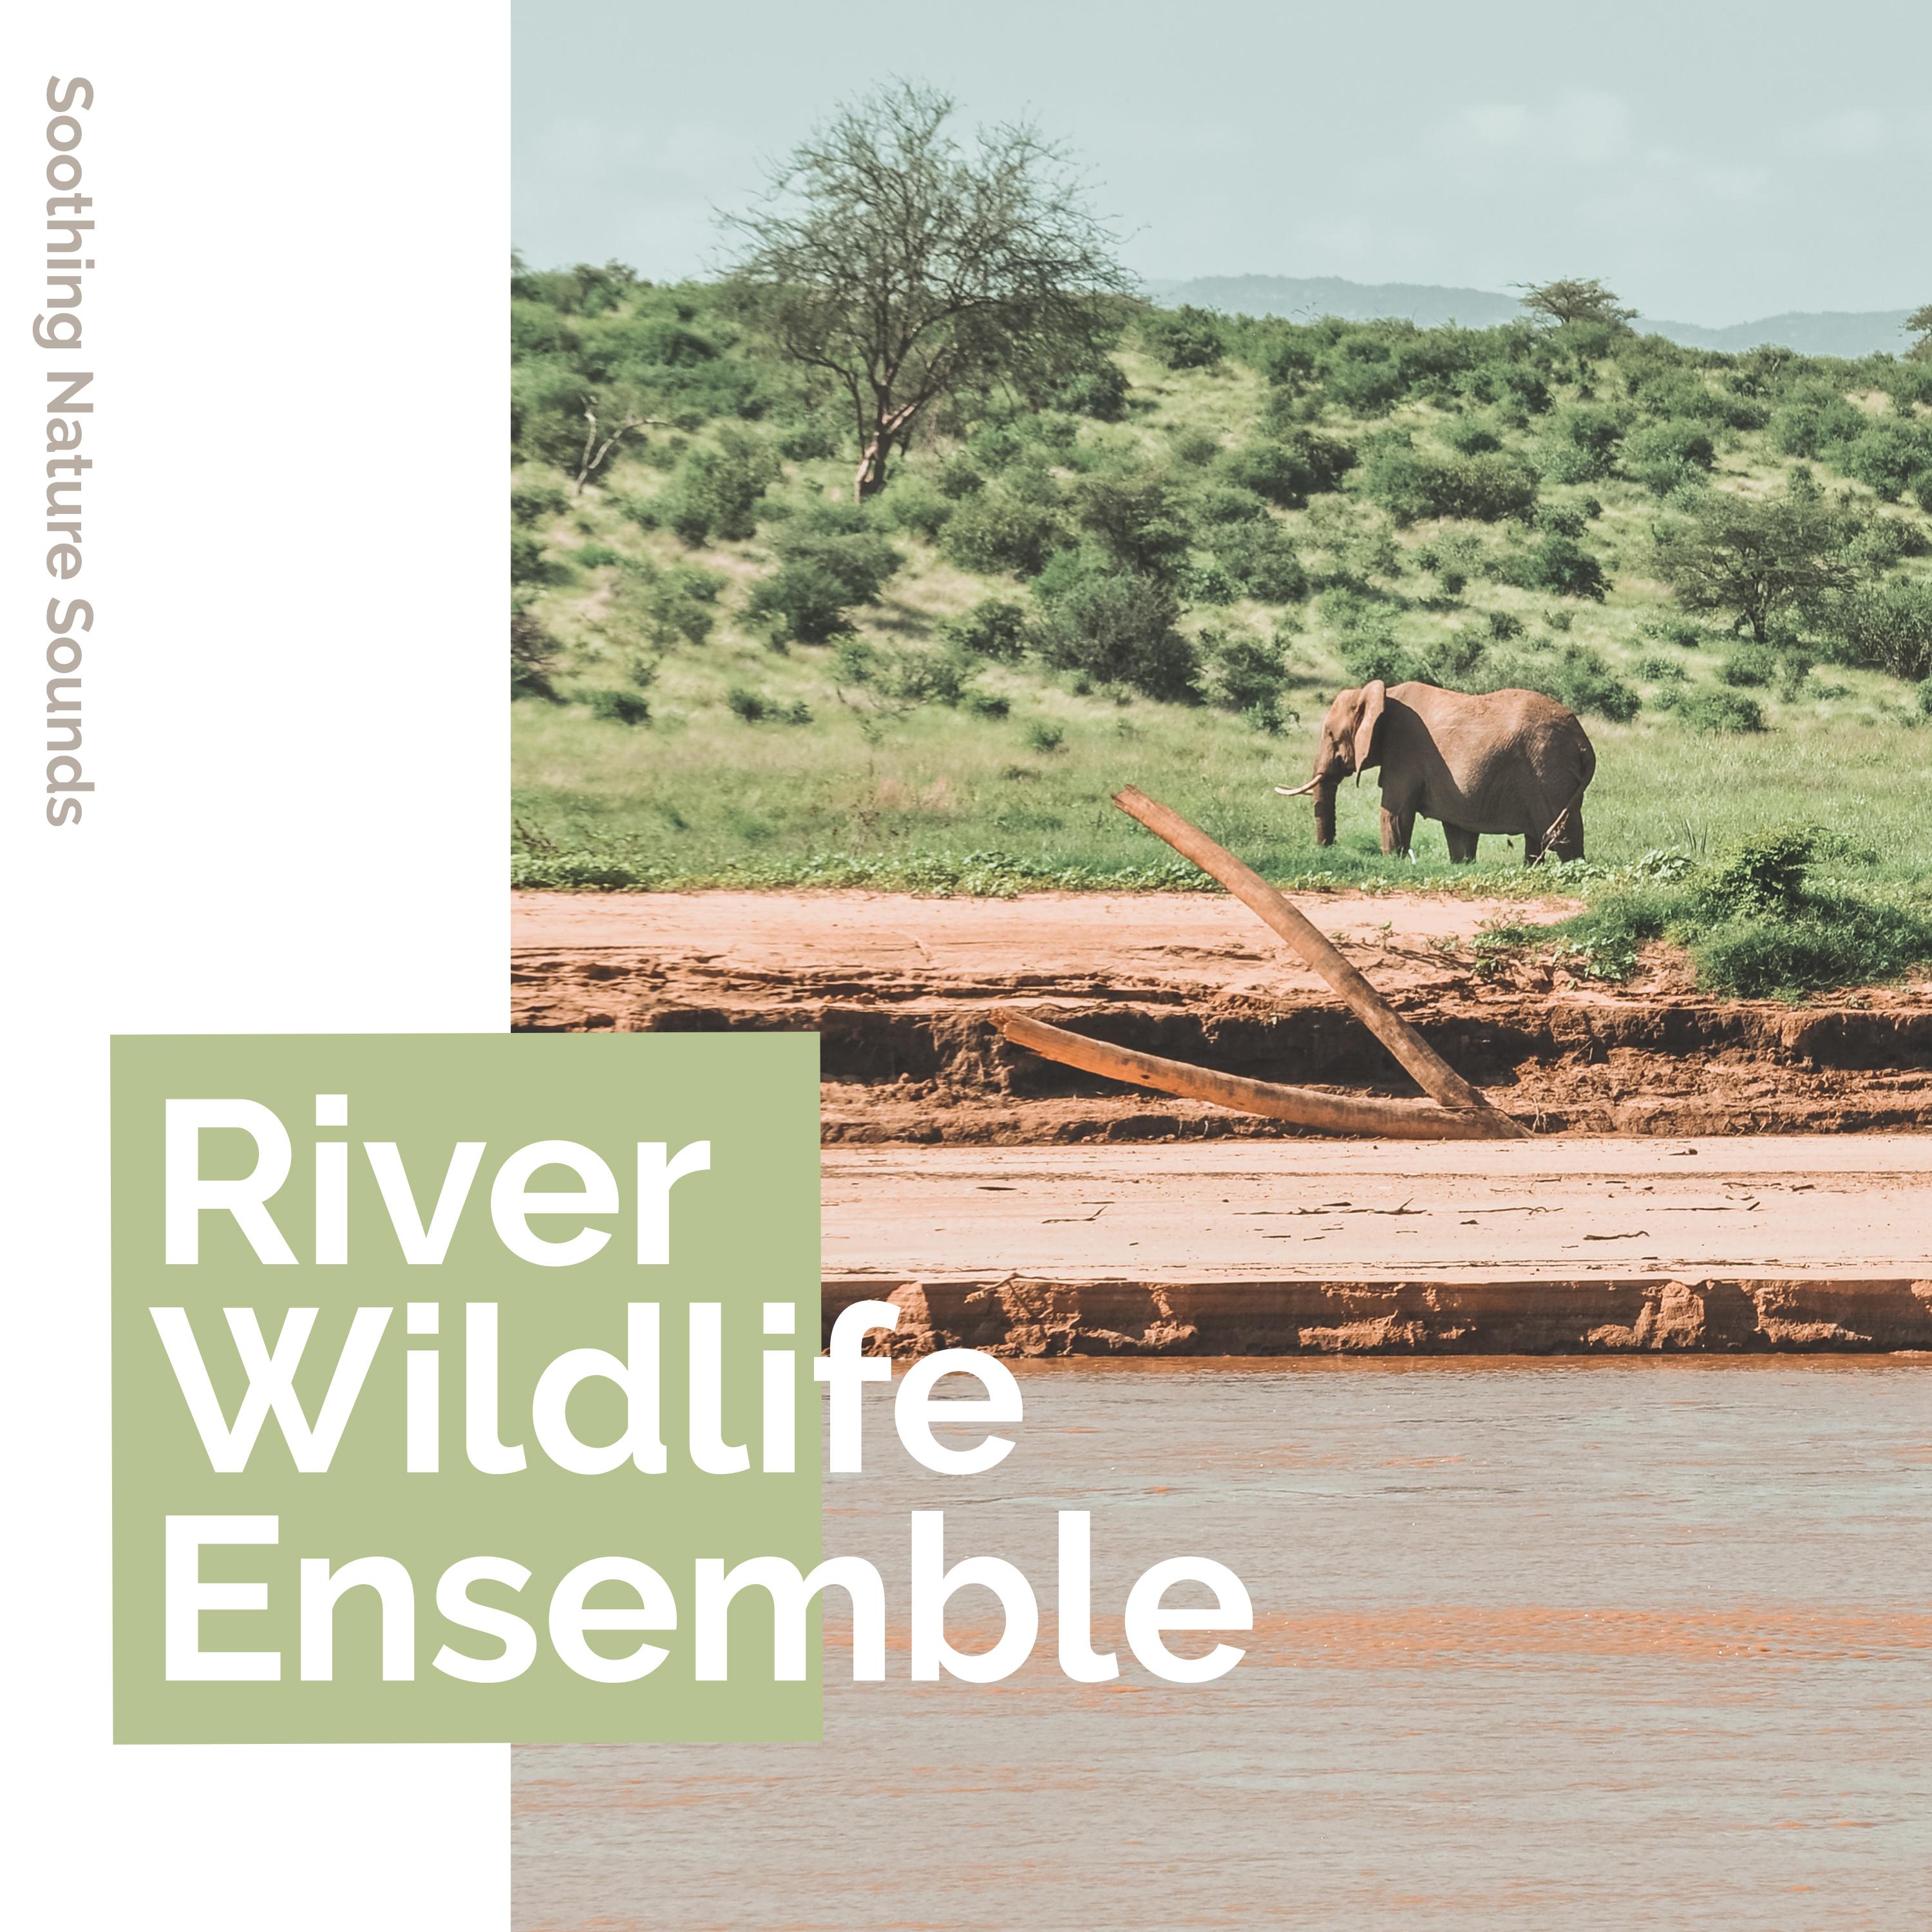 River Wildlife Ensemble